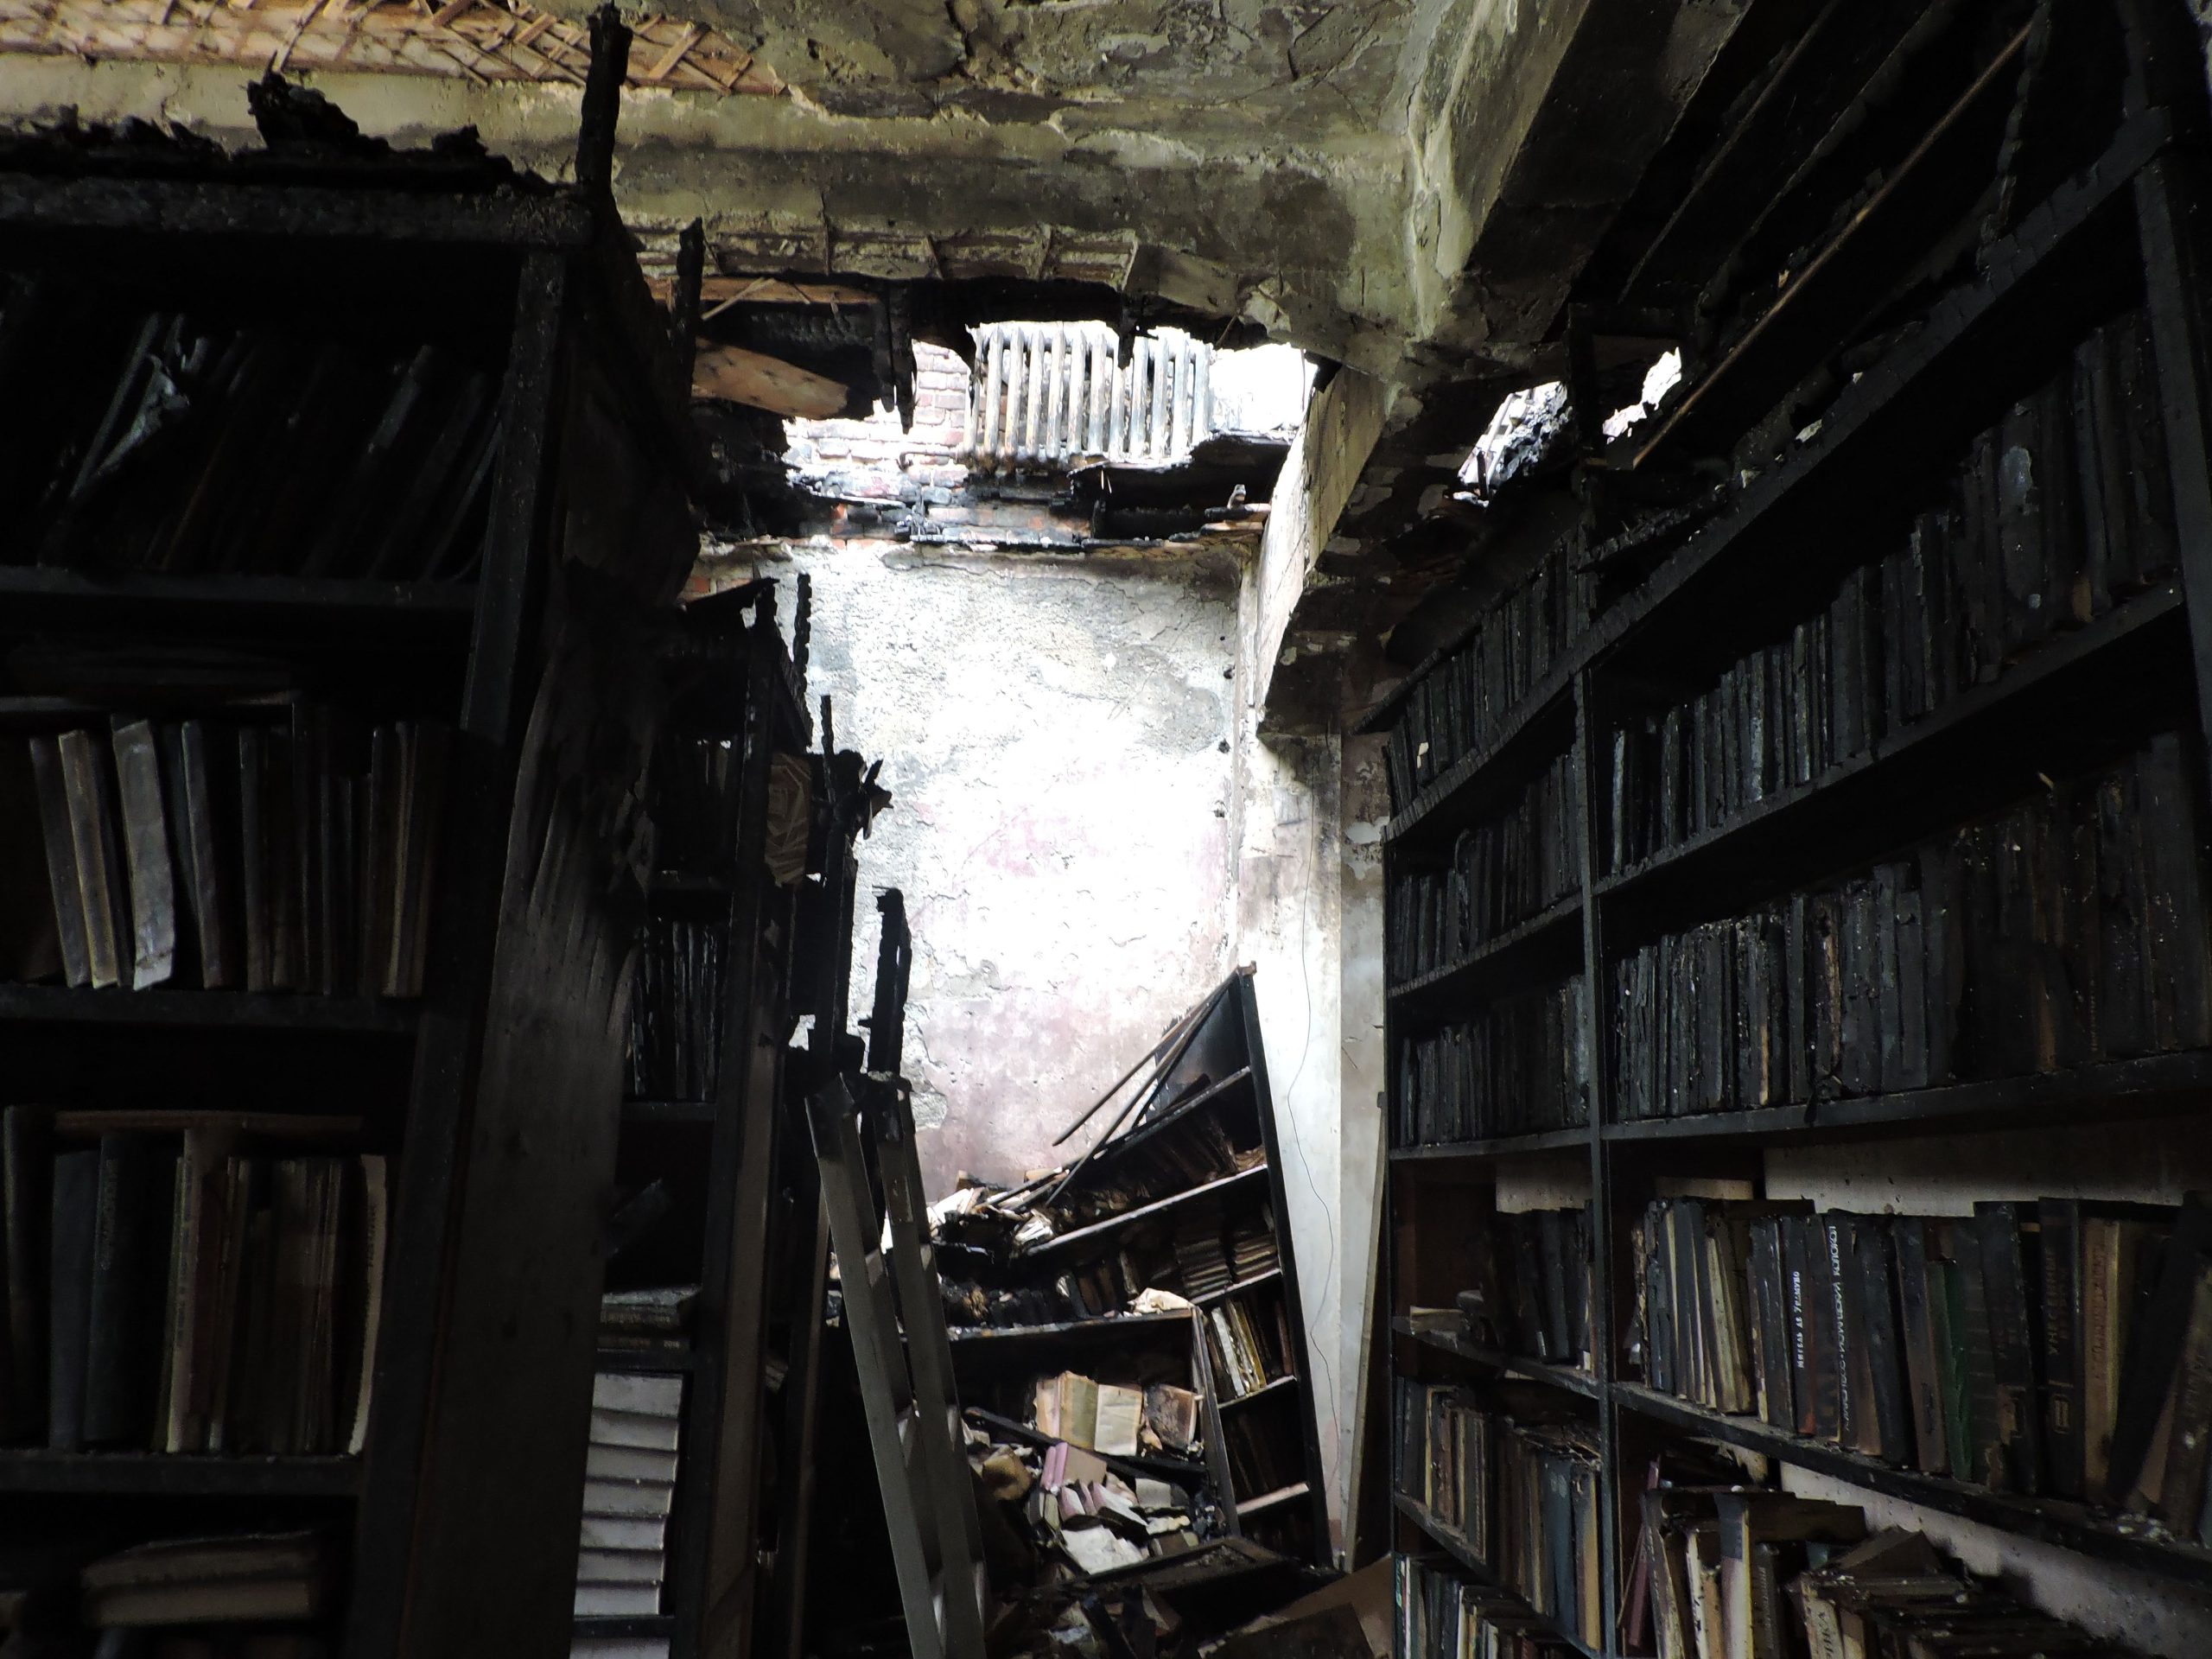 Харків. Згарище, що залишилось від бібліотеки коледжу, знищеної 2 серпня 2022 року ракетою С-300. Фото Сергія Петрова від 2 серпня 2022.